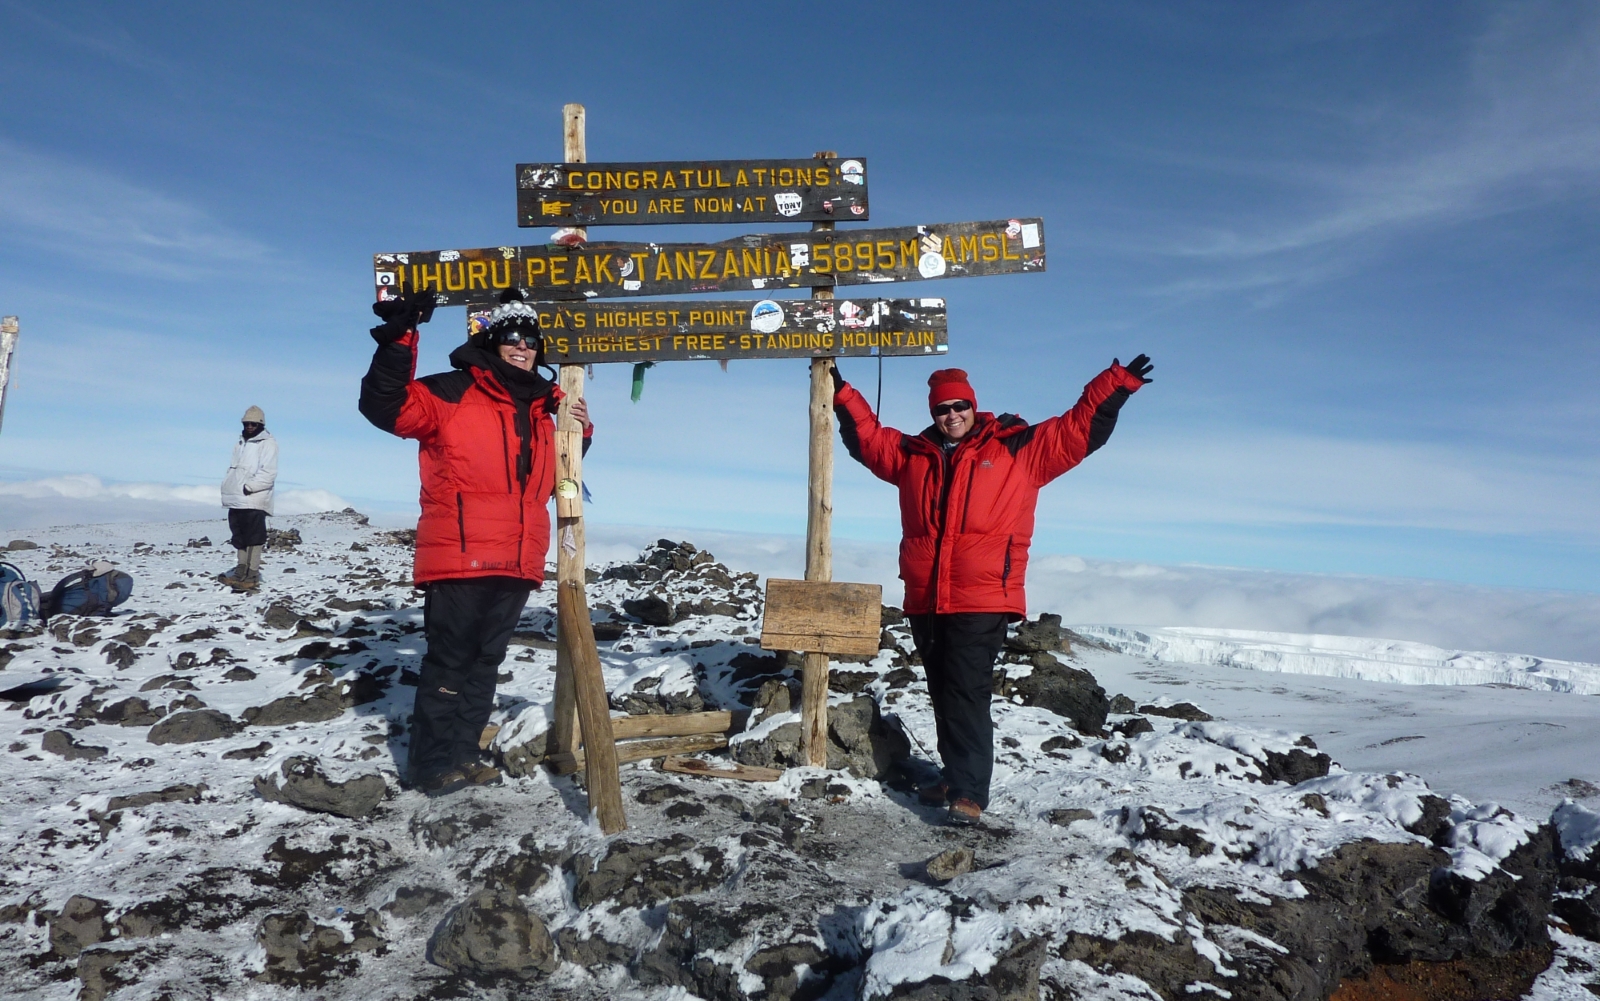 Plan your climb - Kilimanjaro Climbs